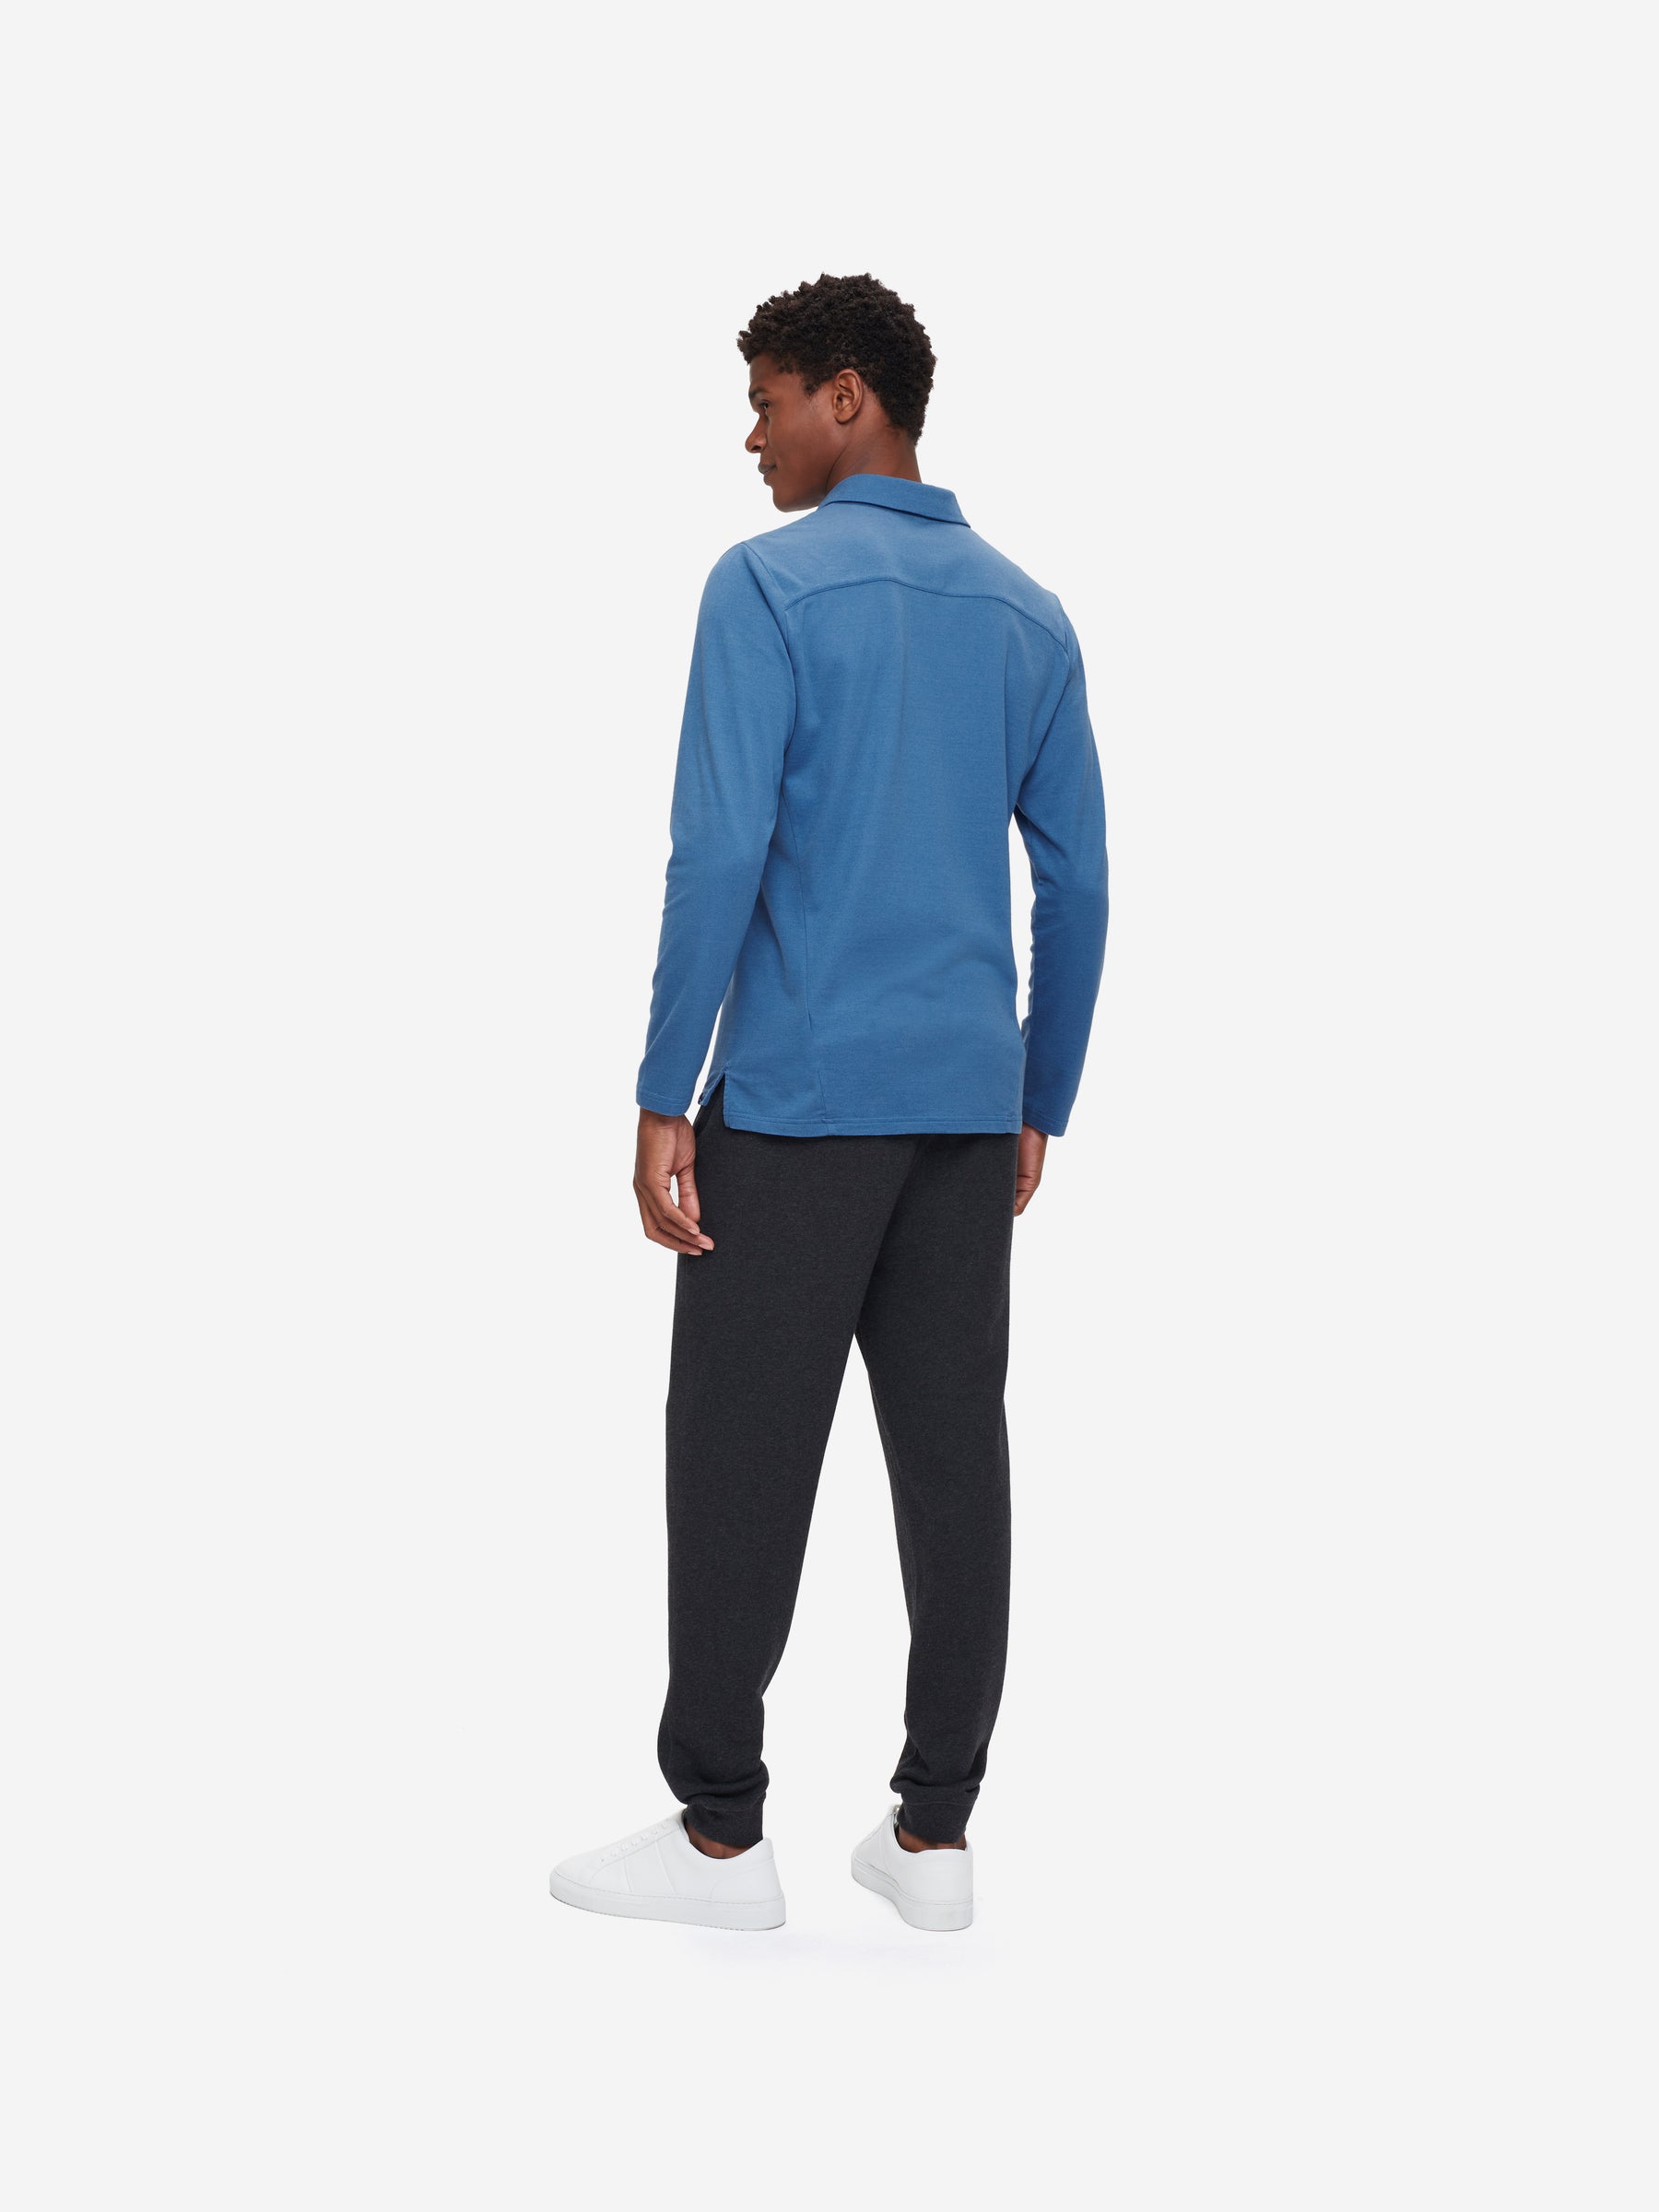 Men's Long Sleeve Polo Shirt Ramsay 3 Pique Cotton Tencel Blue